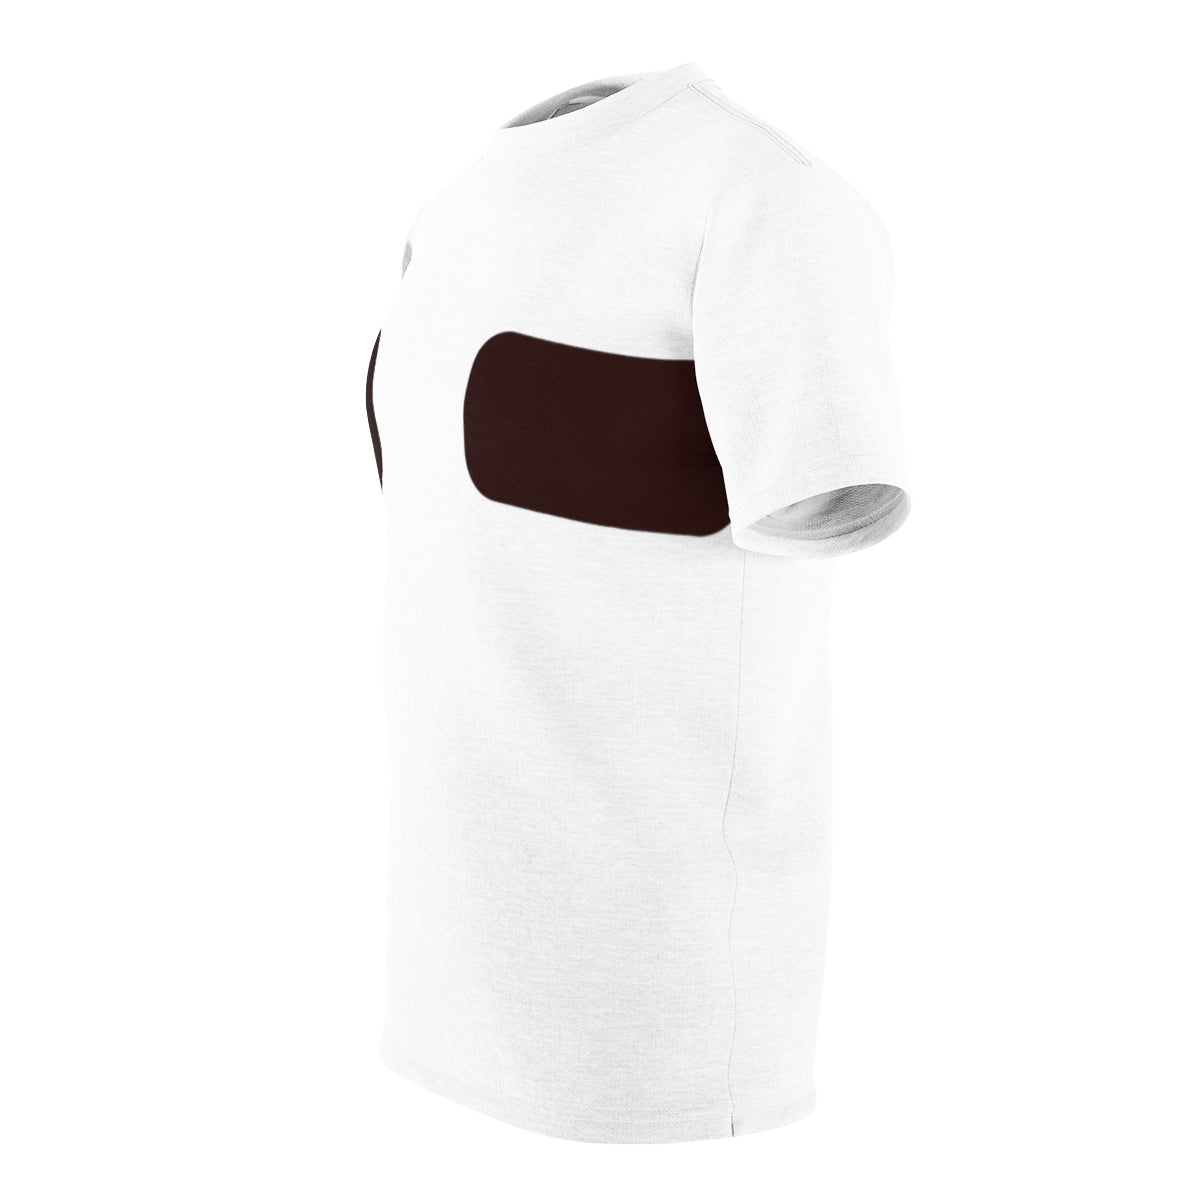 Normalizar la camiseta con cinta en el pecho | Tono de piel 004 - 1 tira 